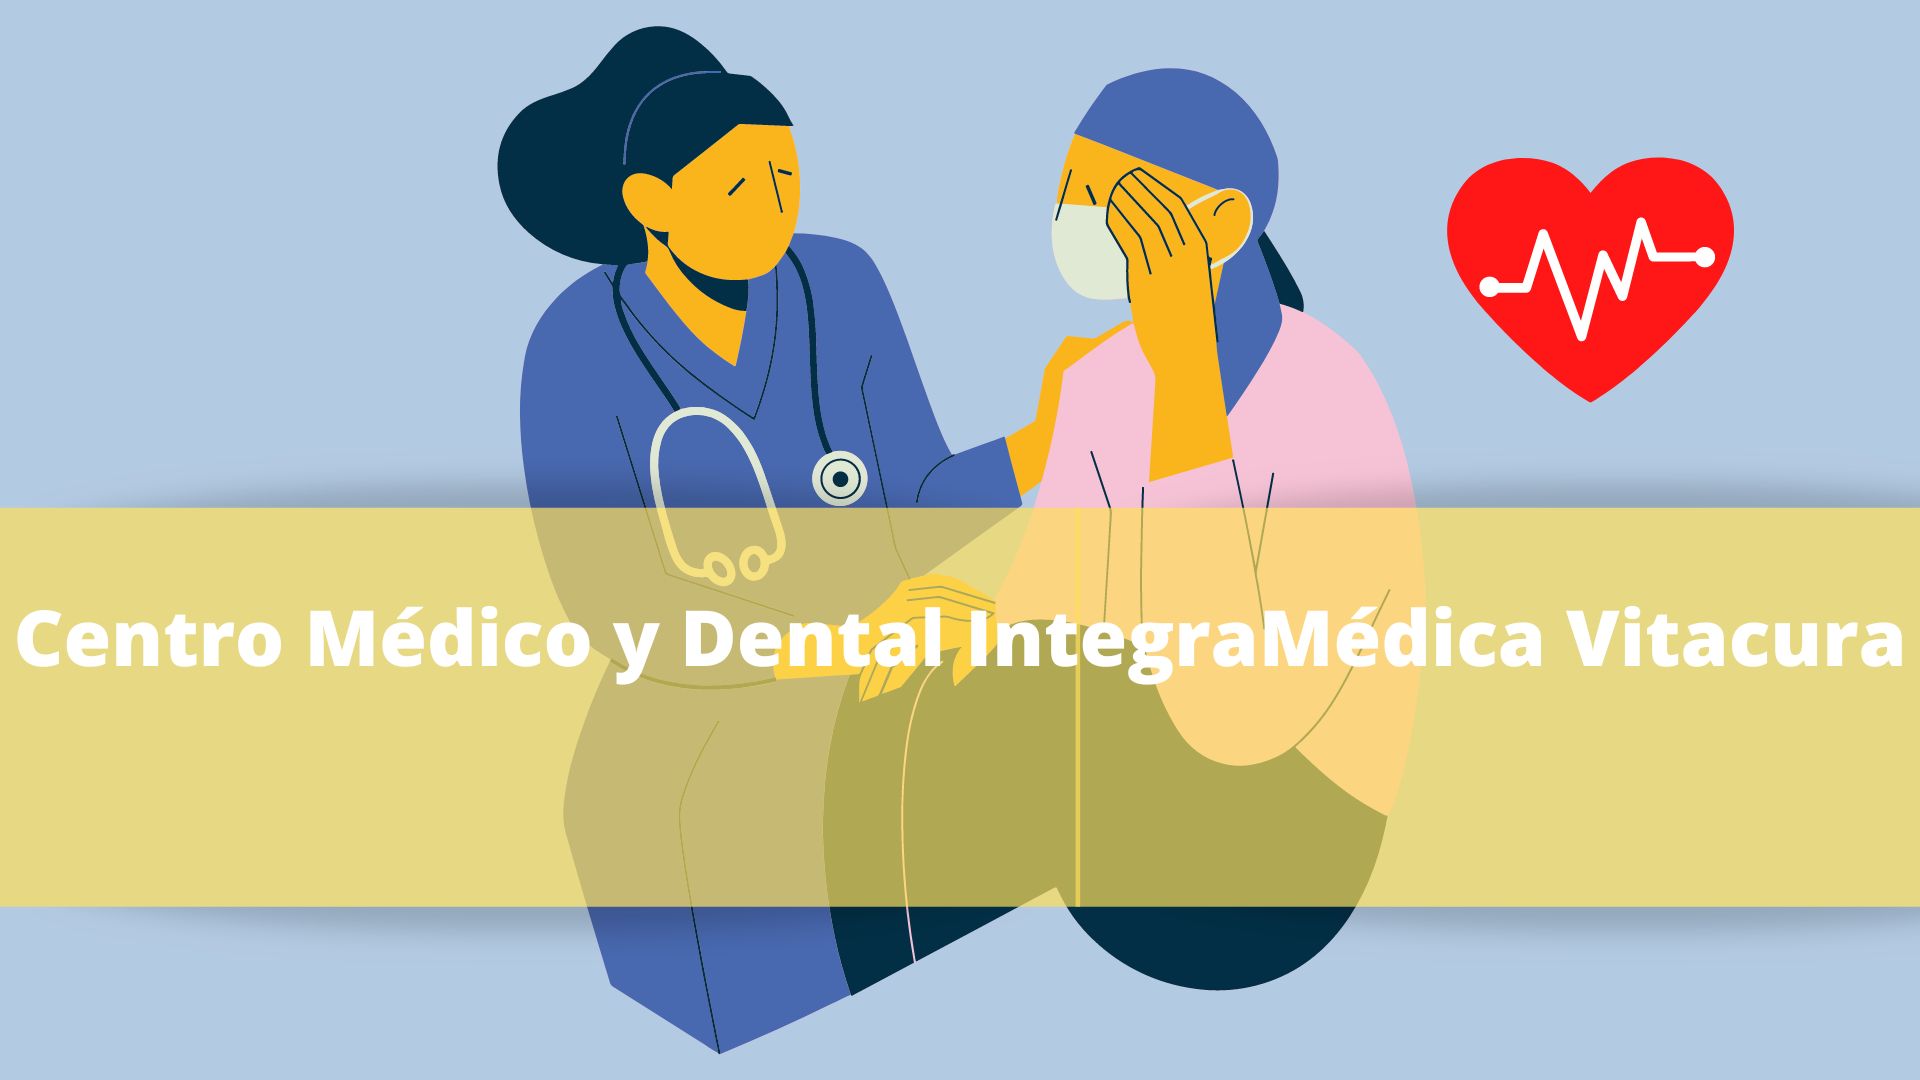 Centro Médico y Dental IntegraMédica Vitacura